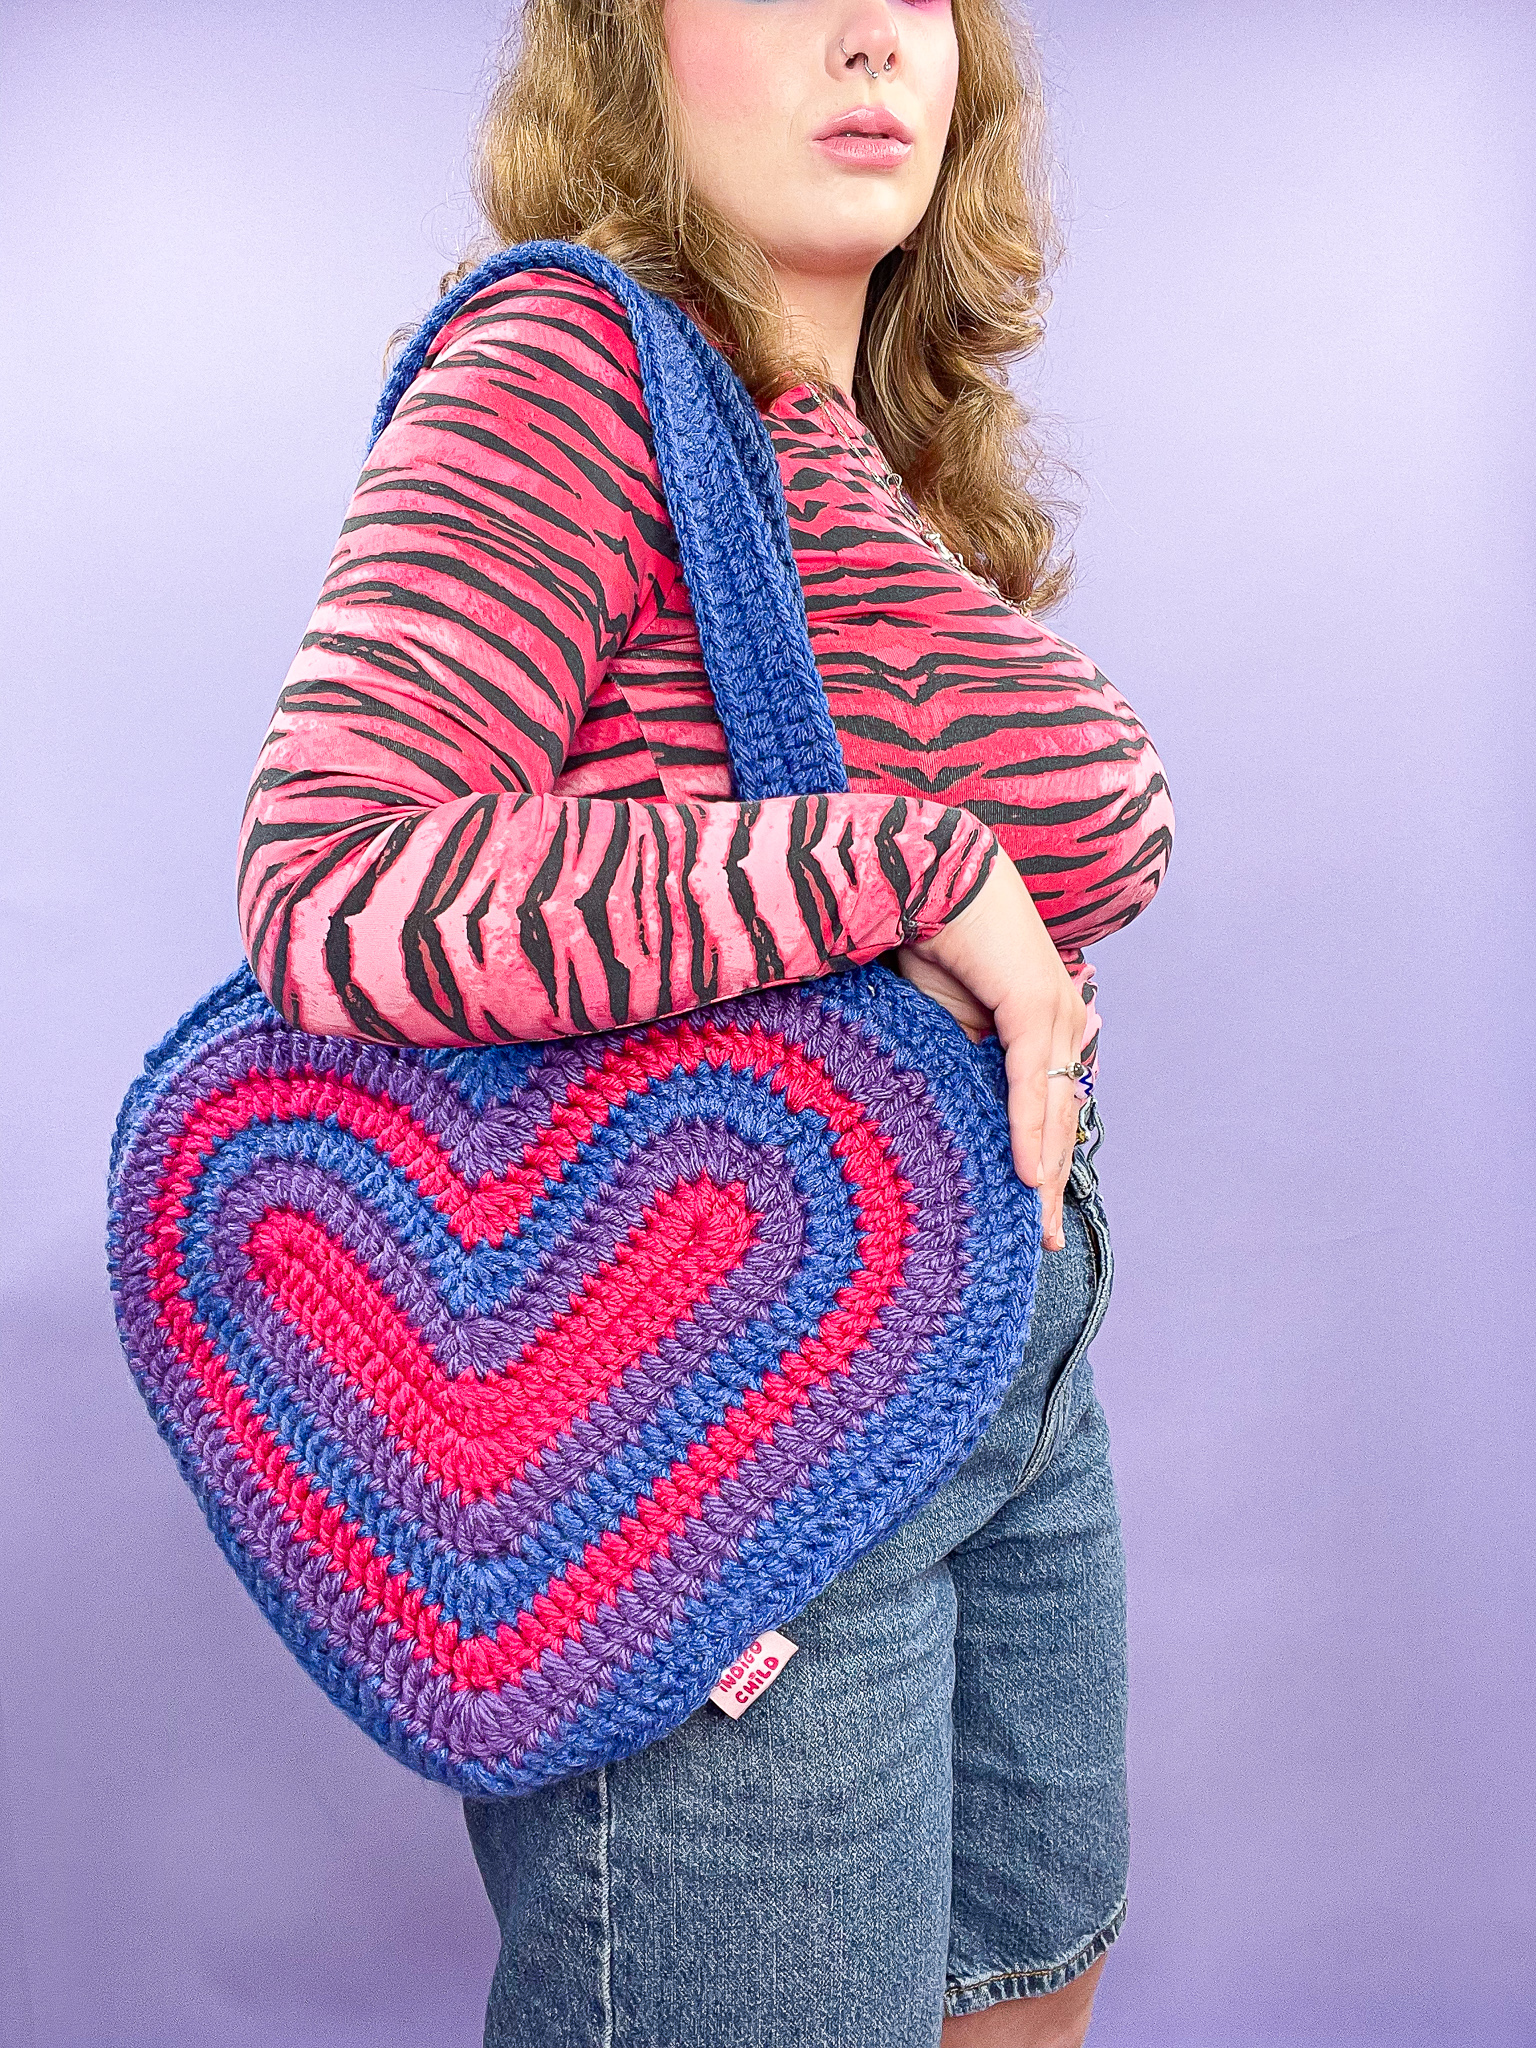 a woman holding a crochet heart bag